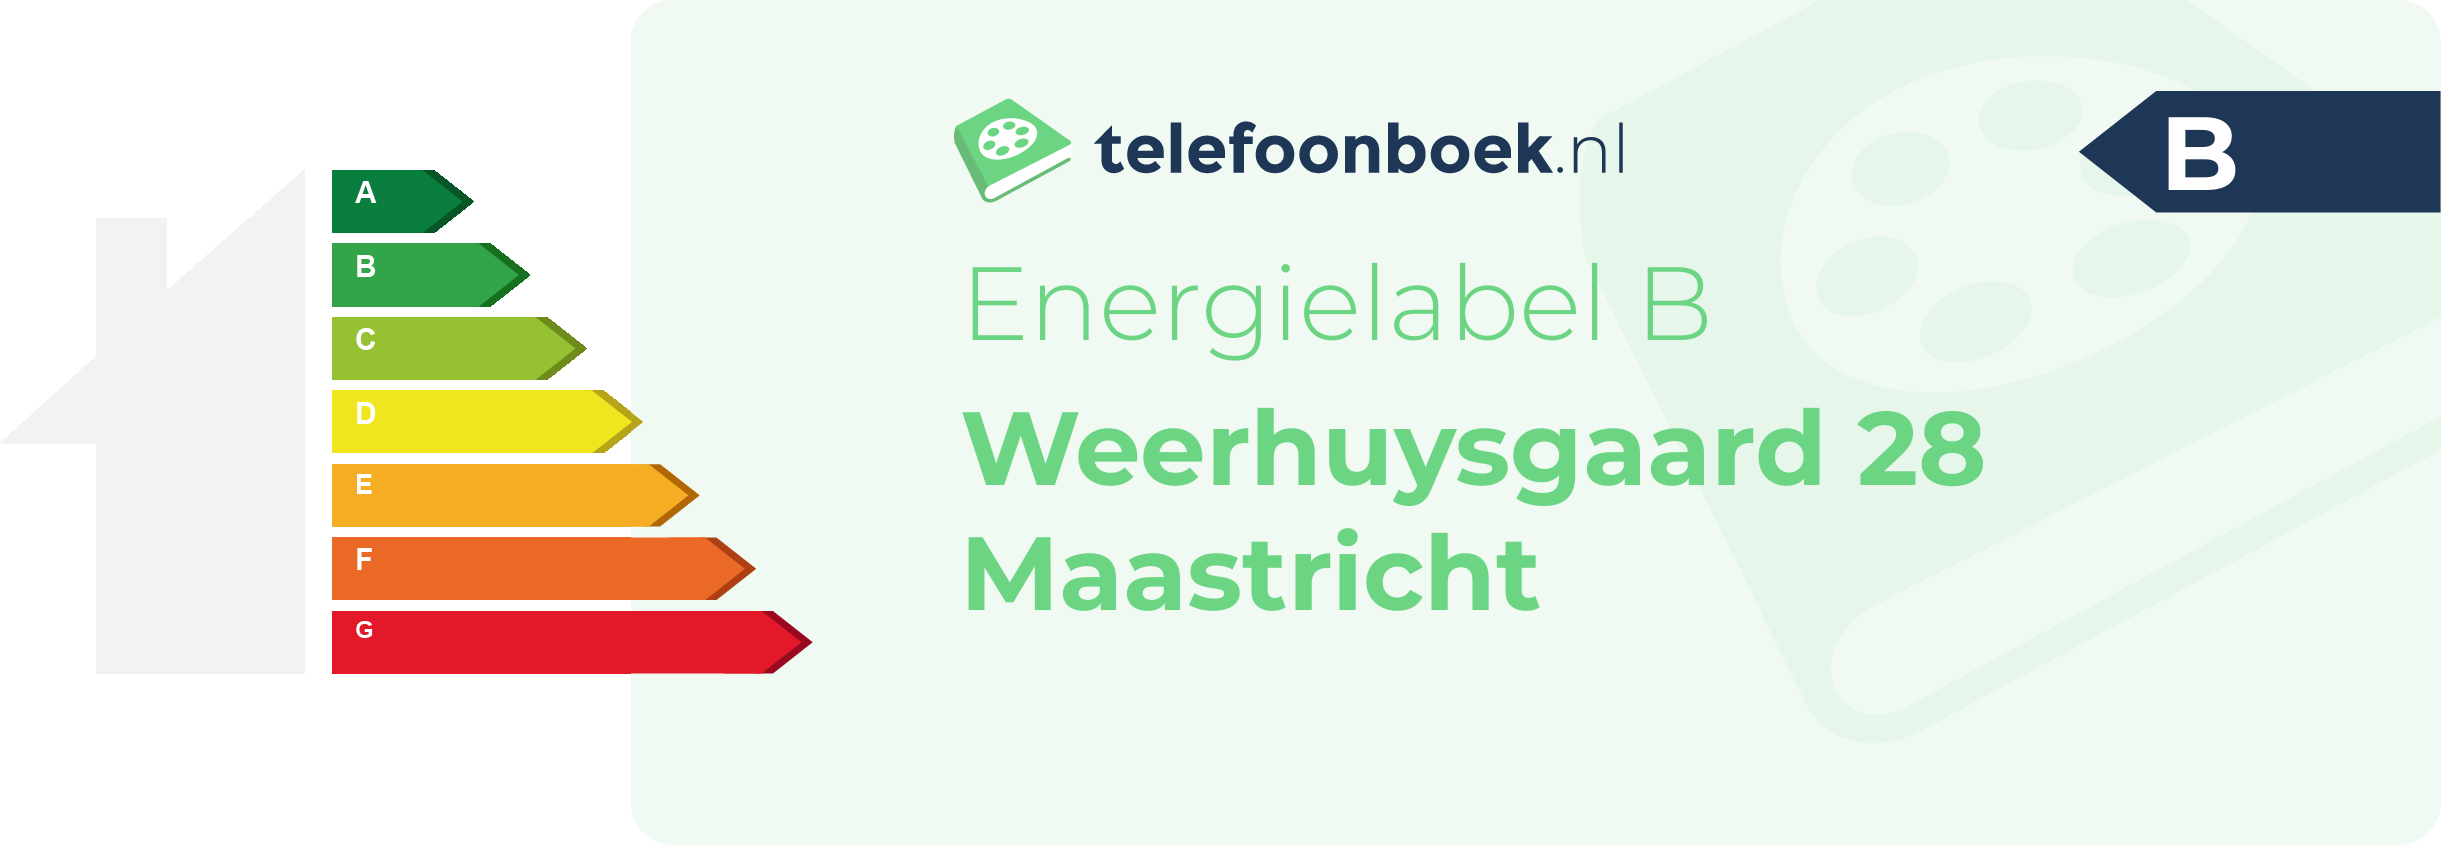 Energielabel Weerhuysgaard 28 Maastricht